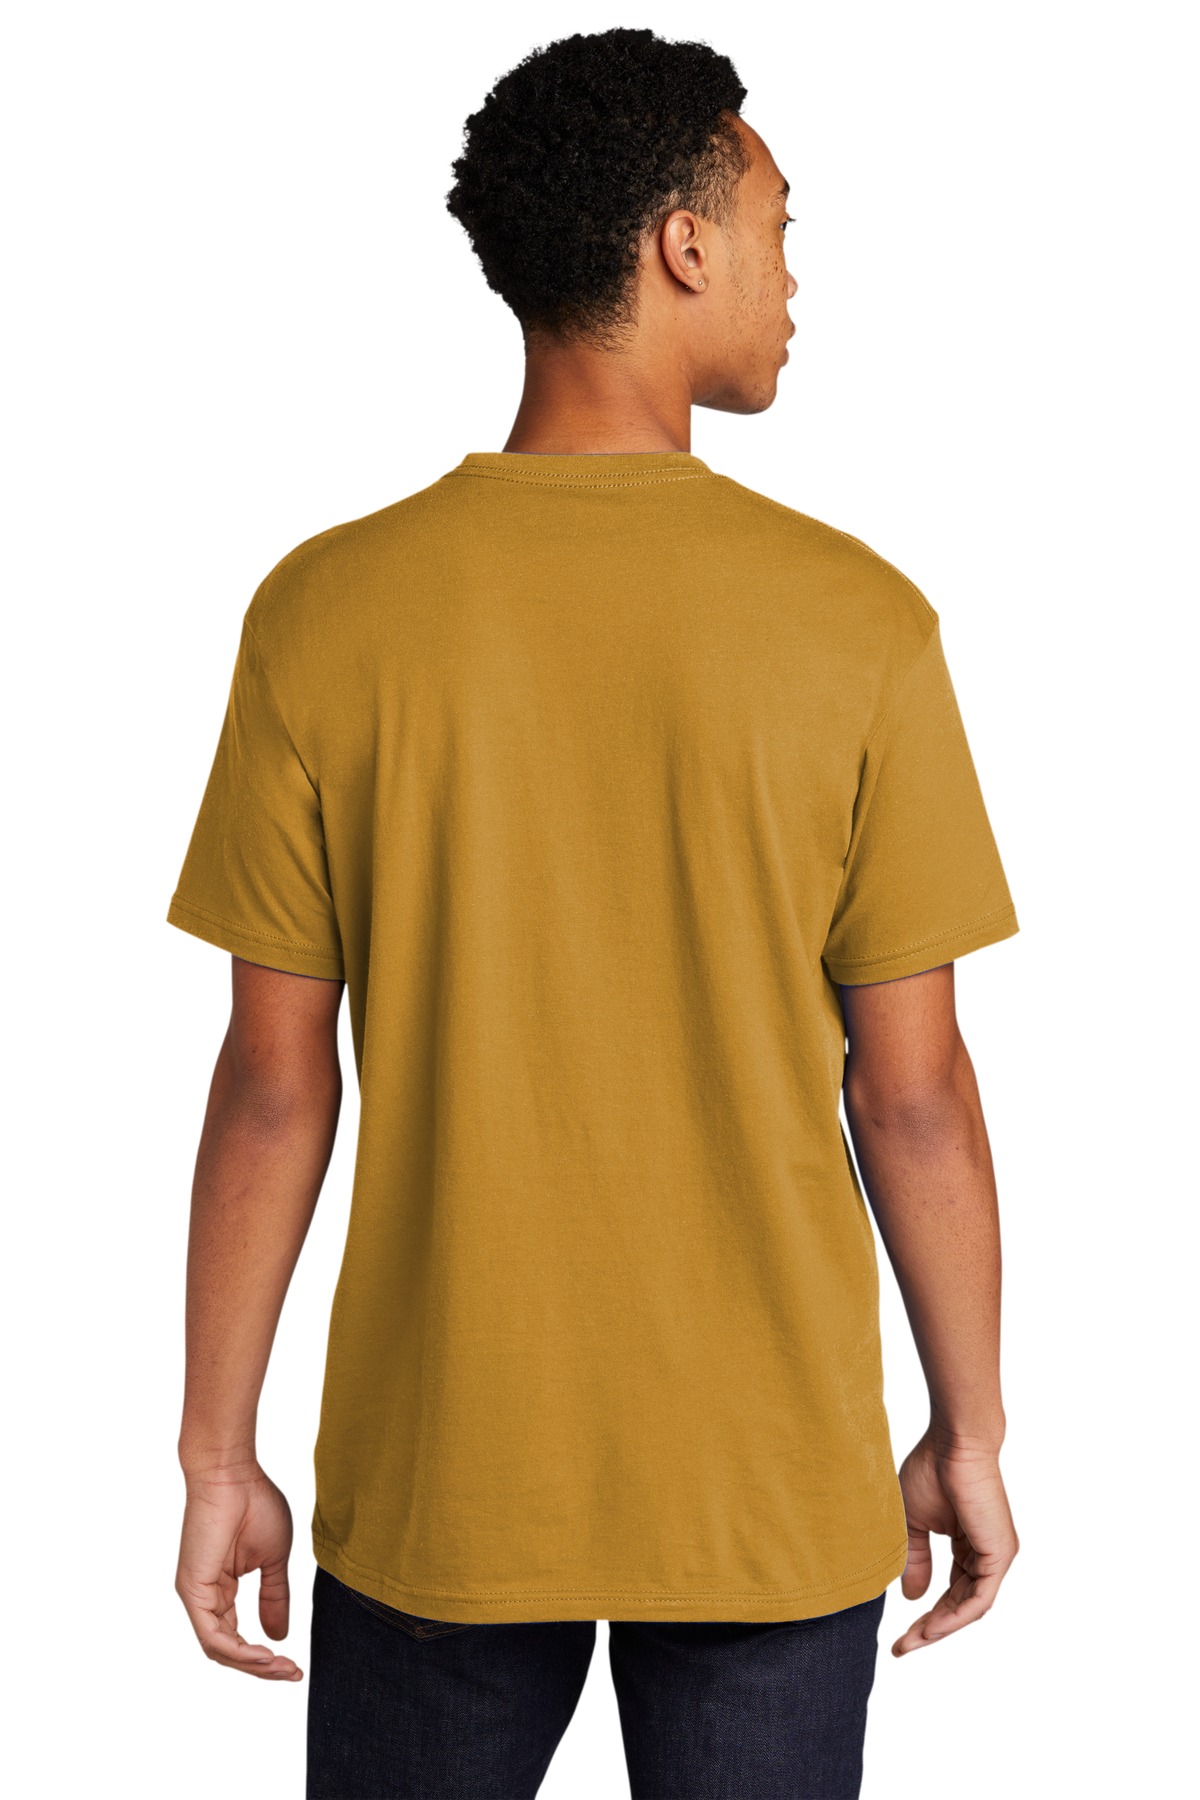 Next Level 3600: Unisex Cotton T-Shirt